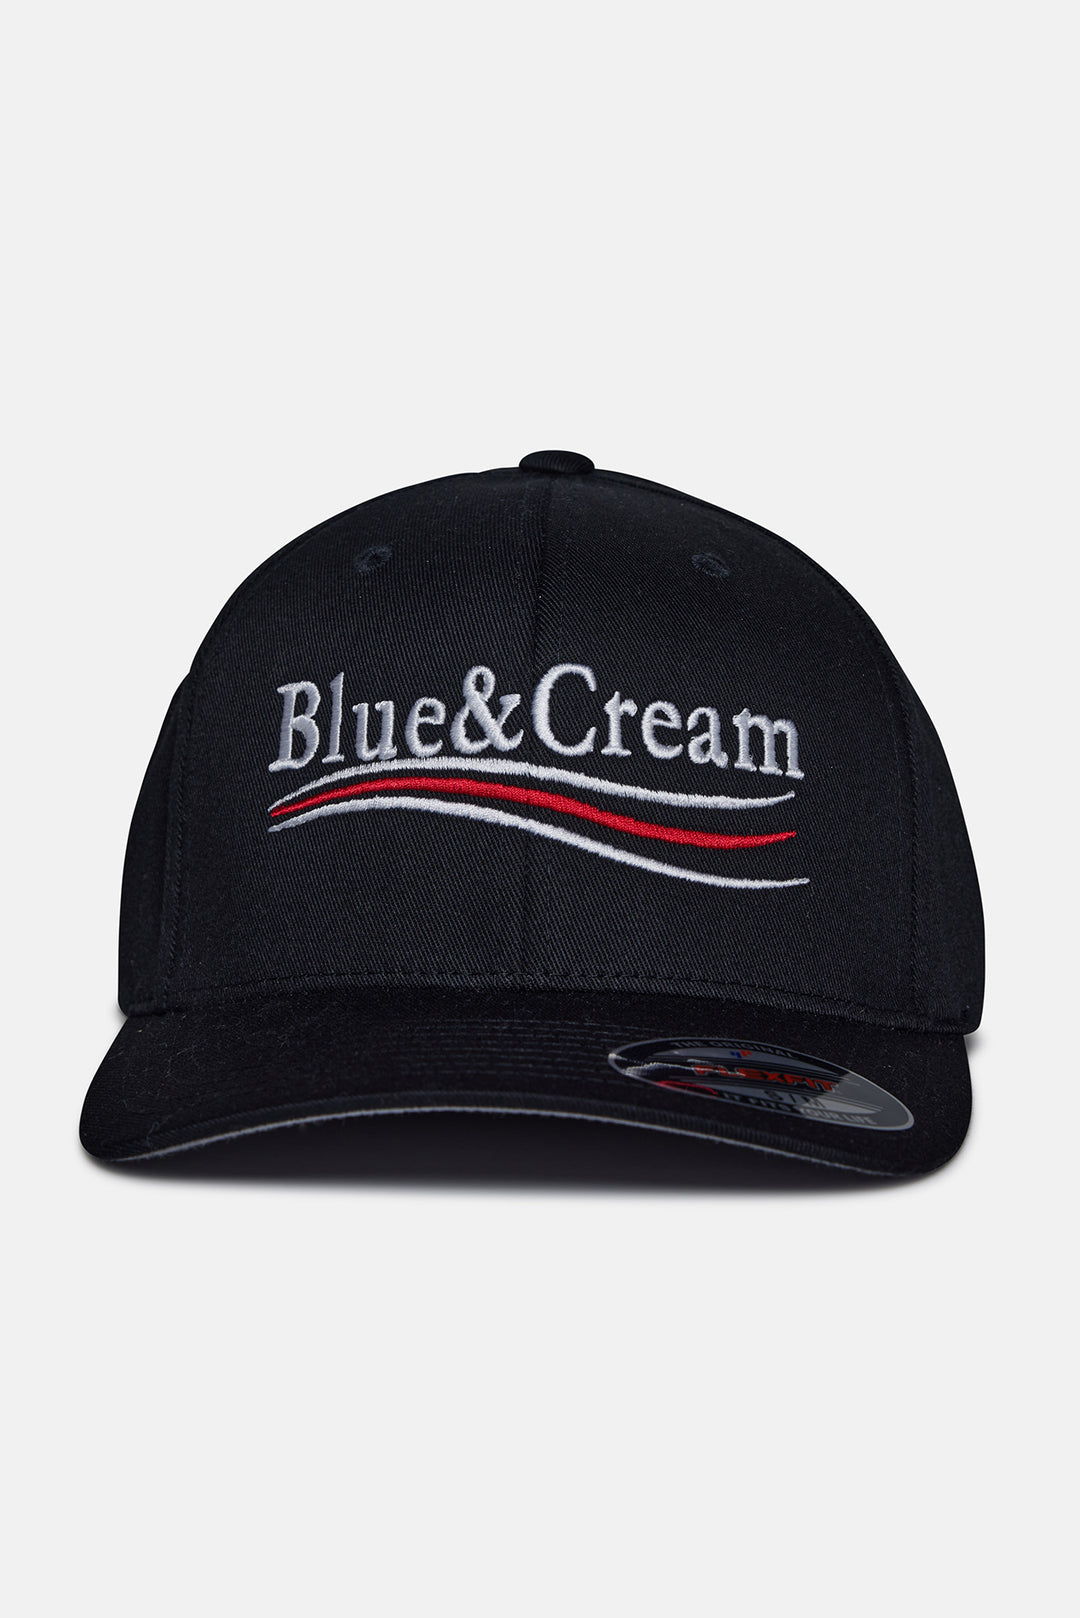 2020 Blue&Cream Election Flex Fit Hat Black